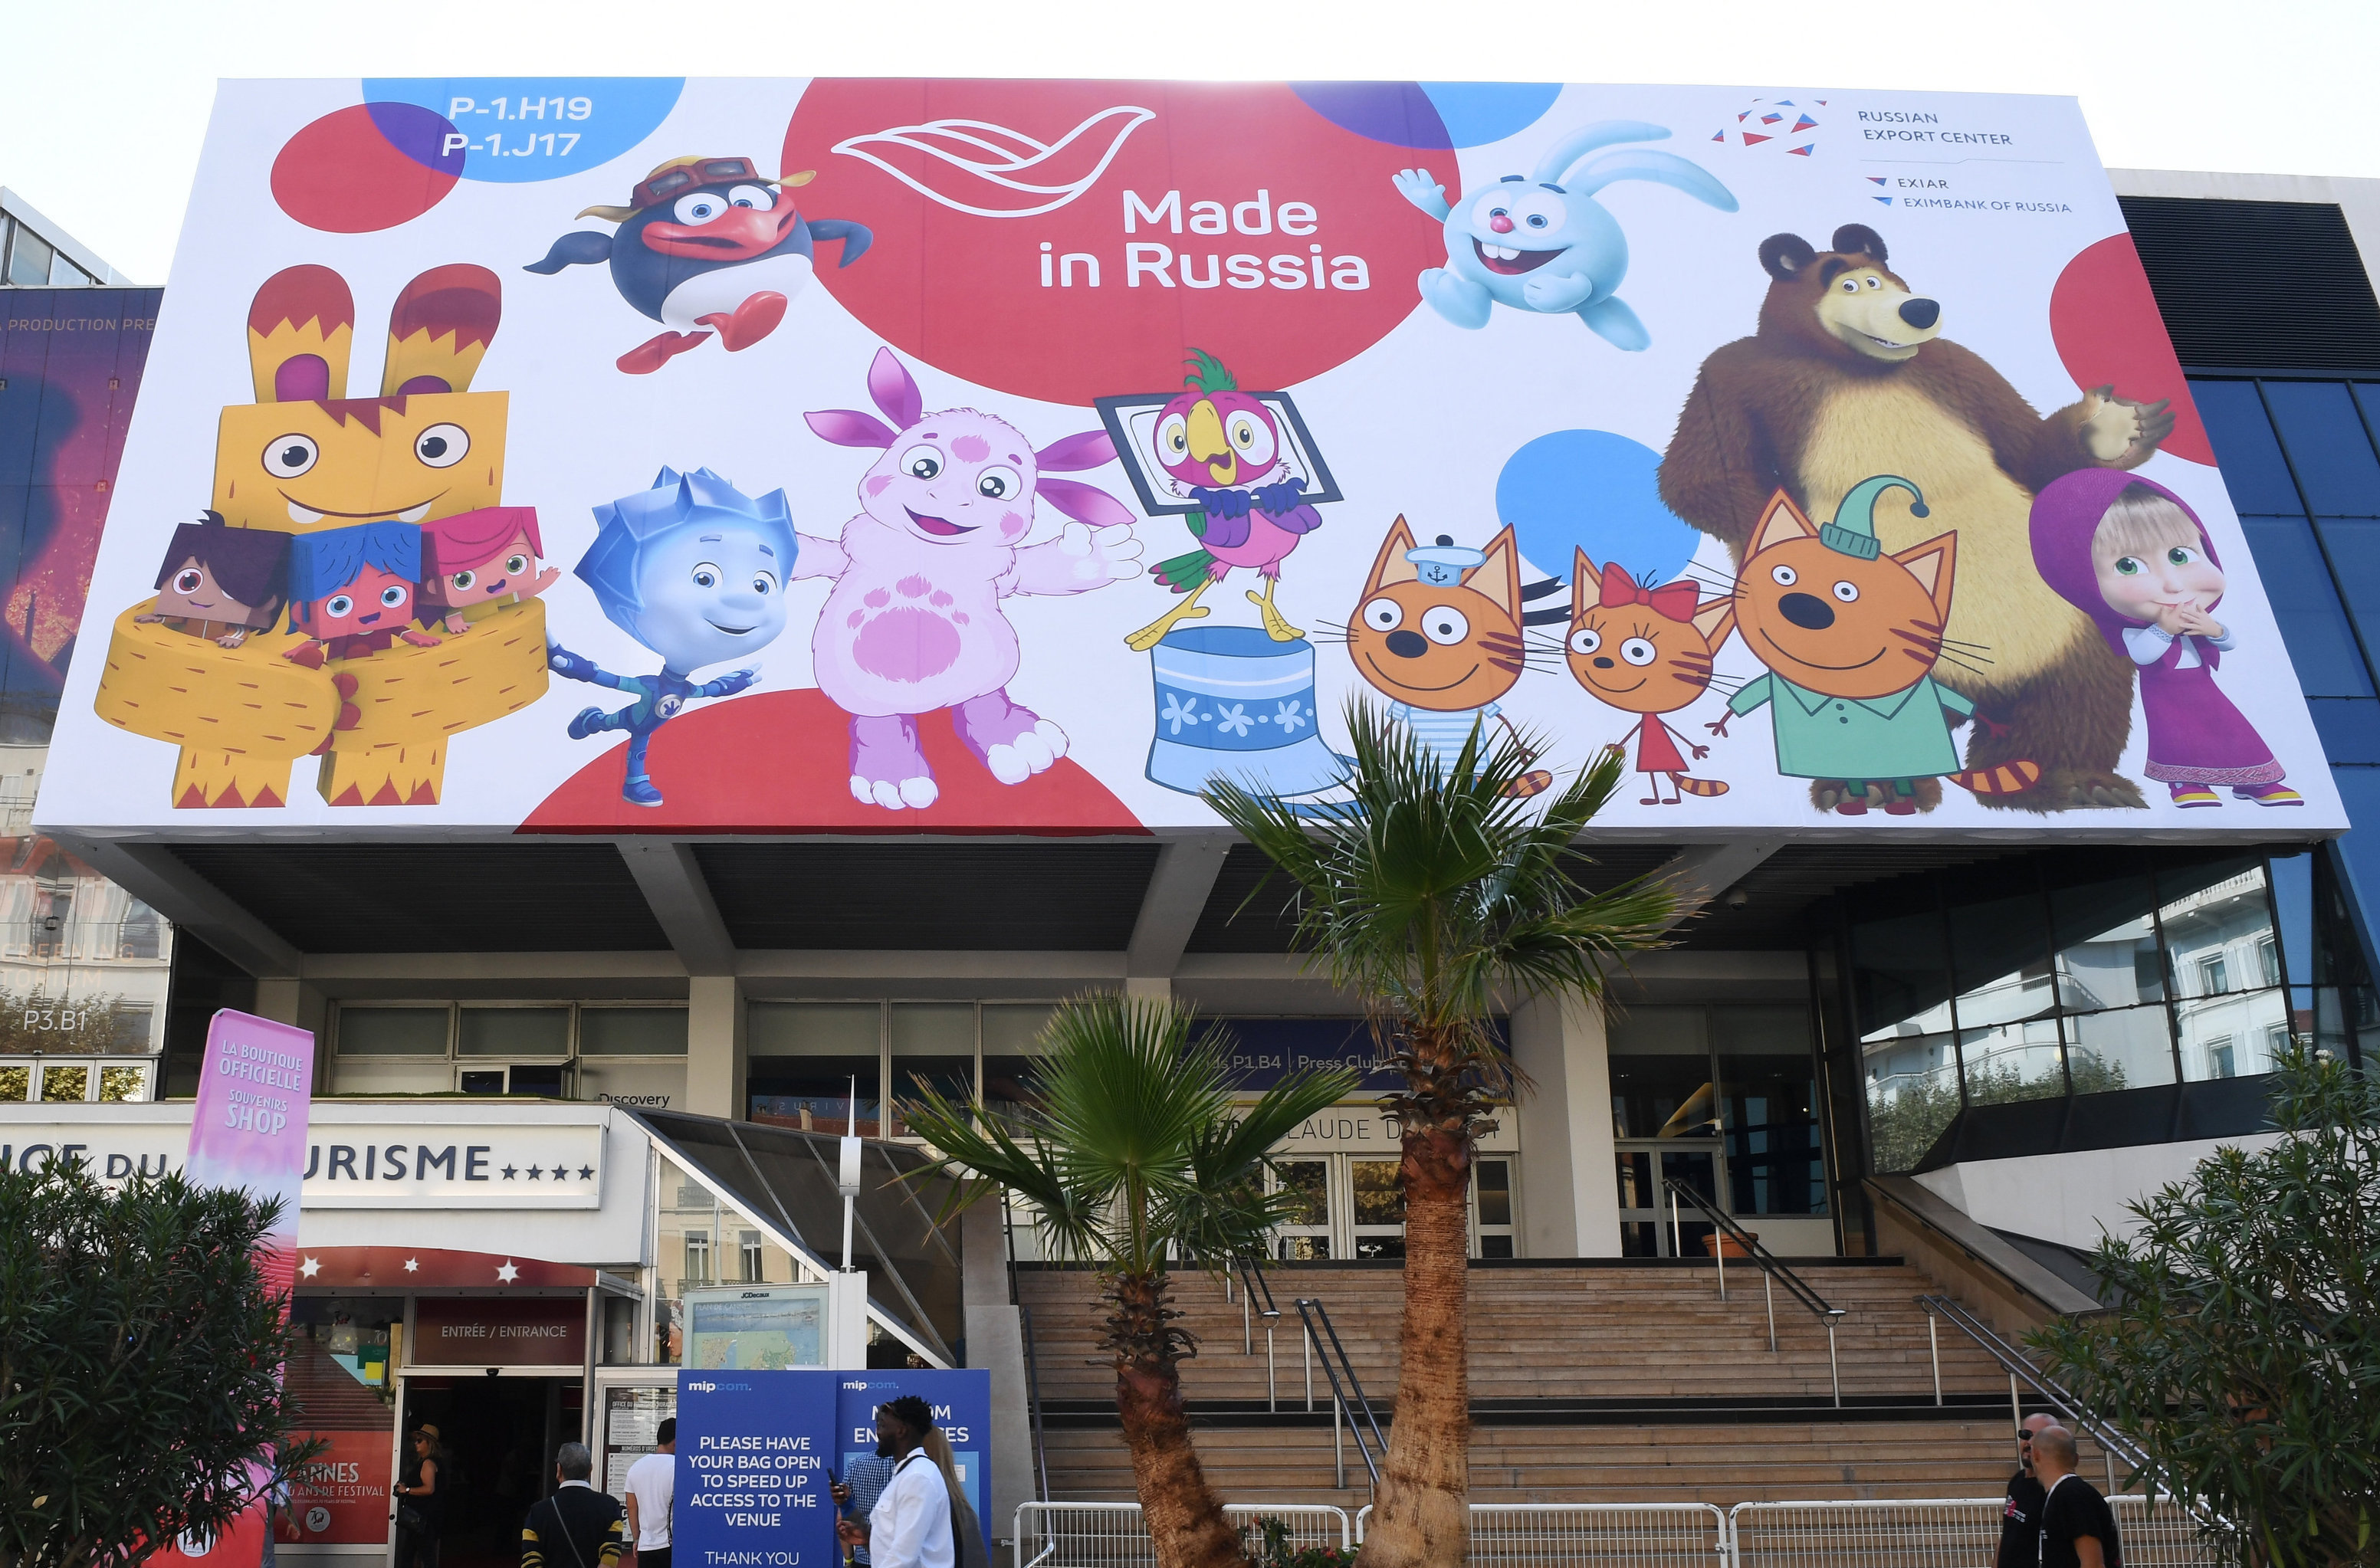 Дворец фестивалей в Канне, где будет проходить Международный рынок аудиовизуального контента MIPCom, с рекламой русских проектов, представленных на телерынке.